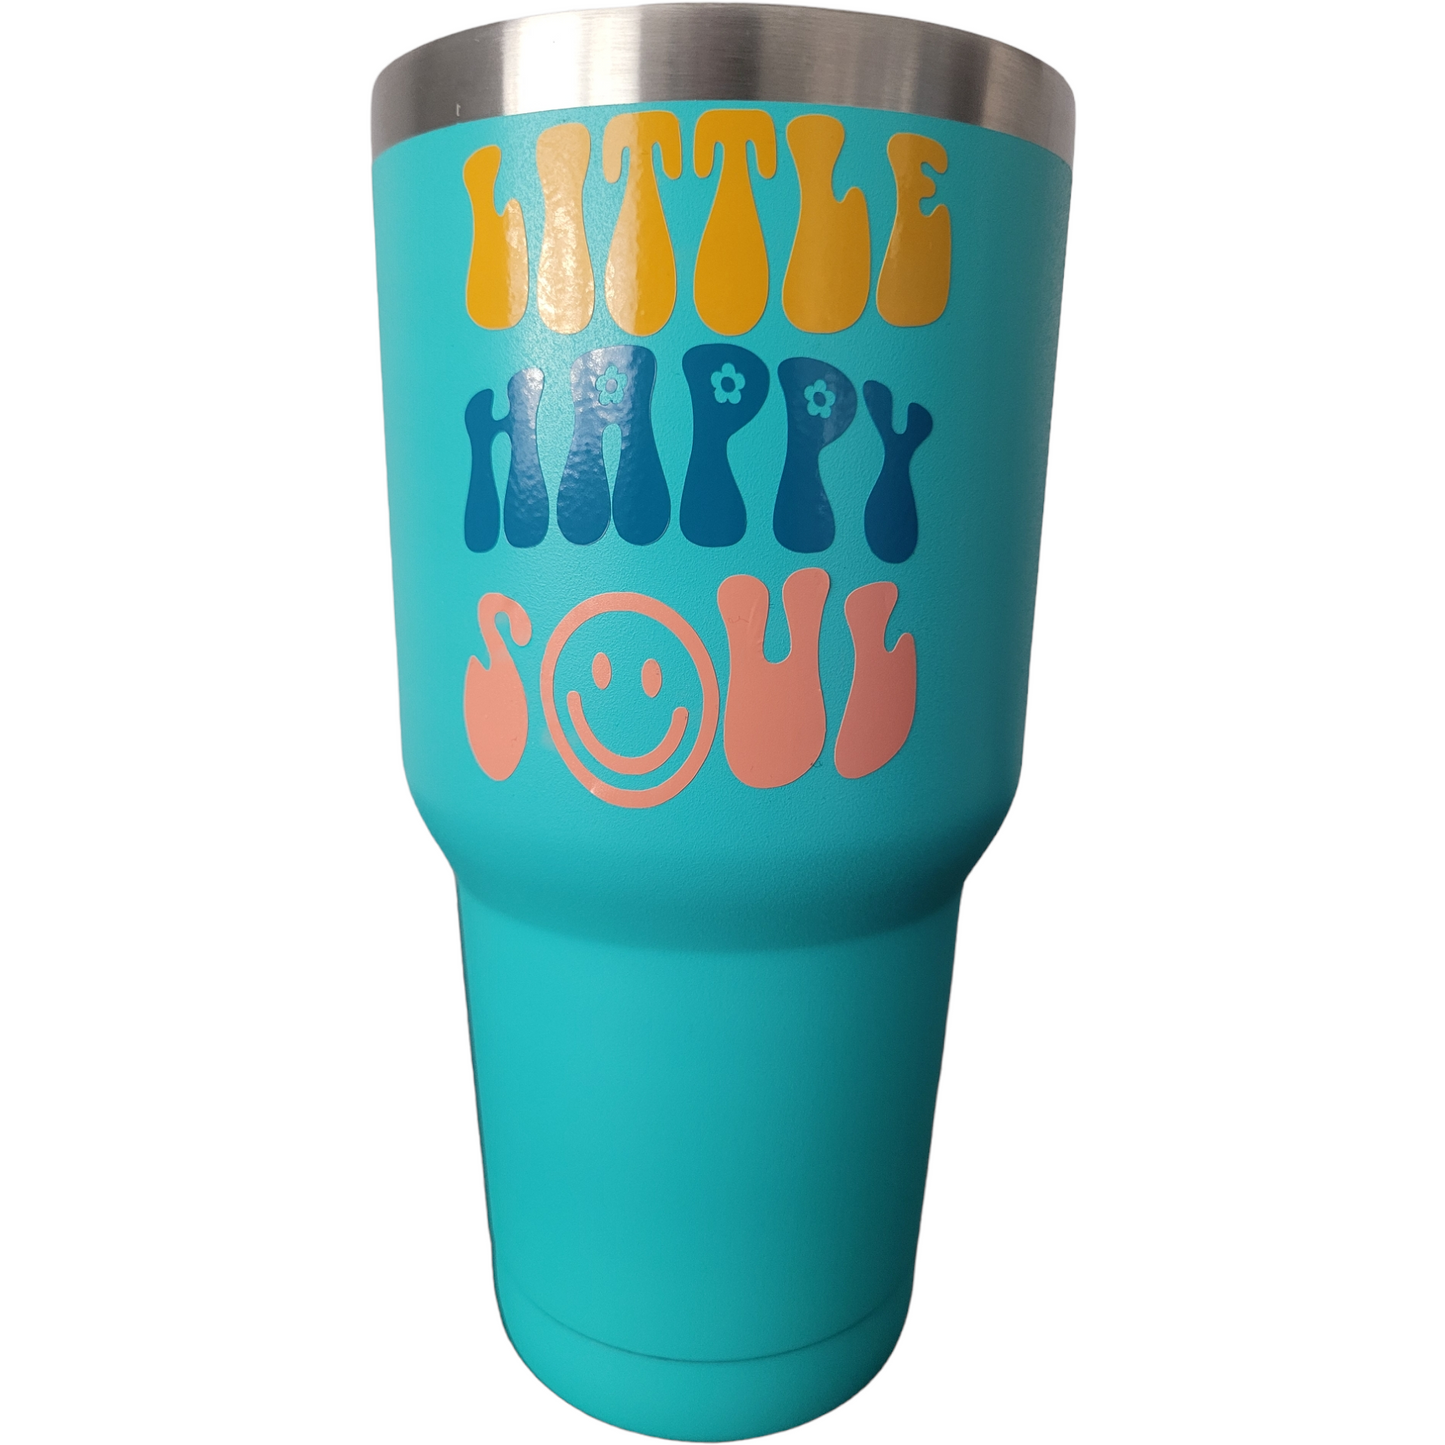 30oz Travel Mug - (Assorted colors)